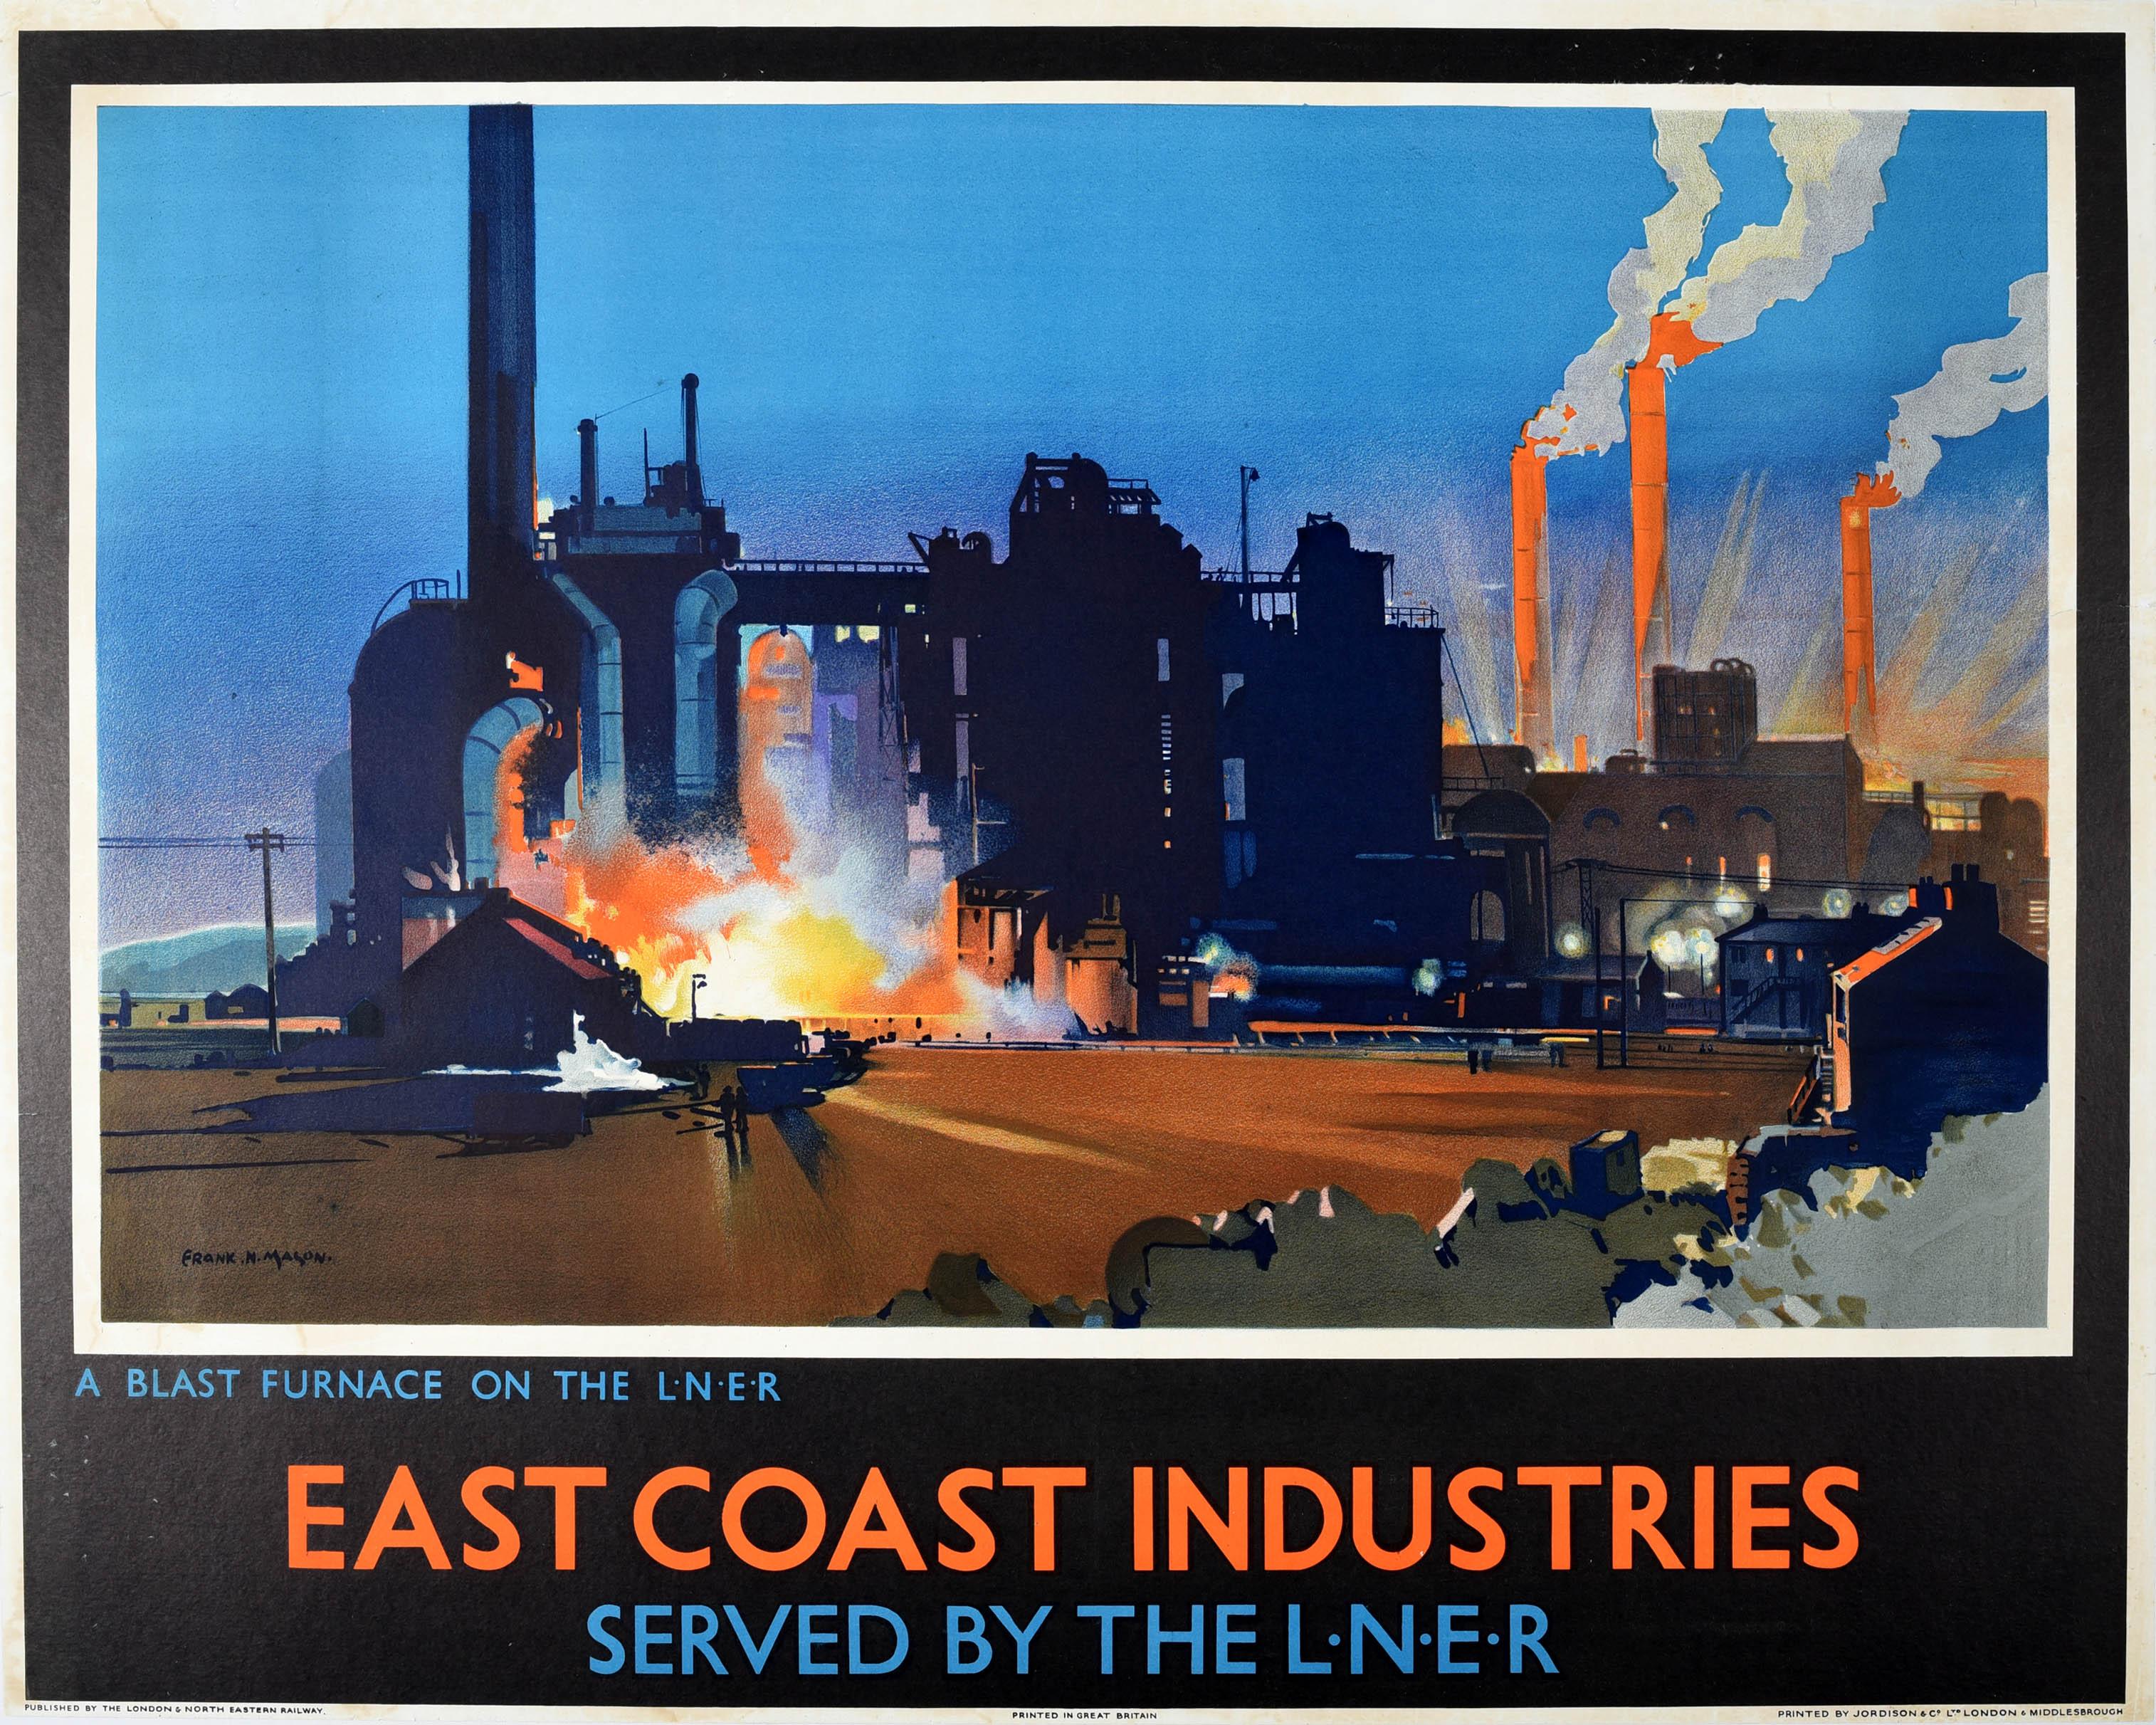 Frank Mason Print - Original Vintage Railway Poster East Coast Industries Blast Furnace On The LNER